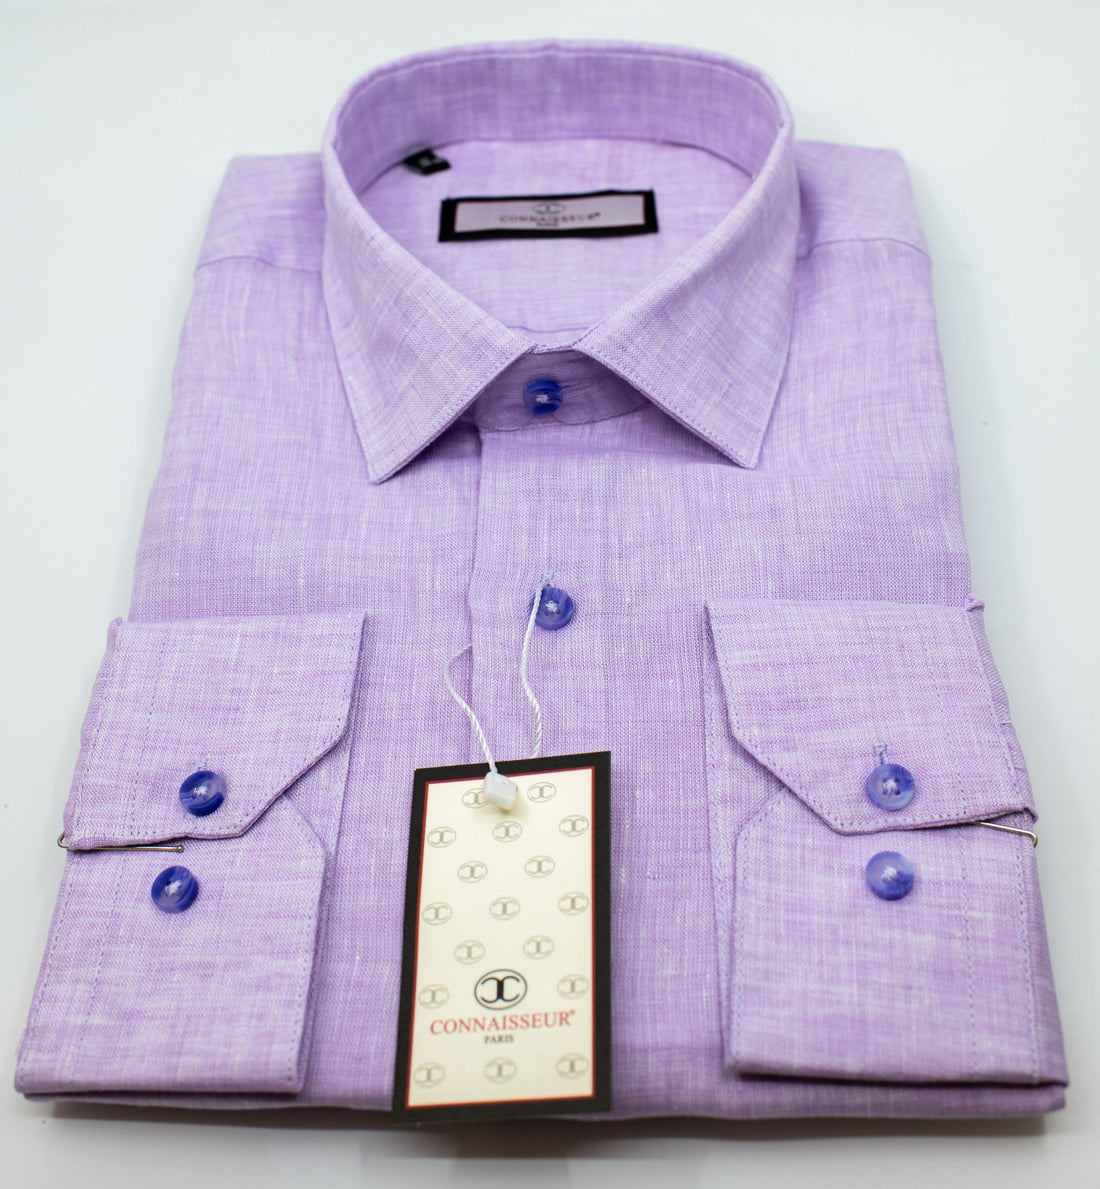 Connaisseur - Lavender linen slim fit dress shirt